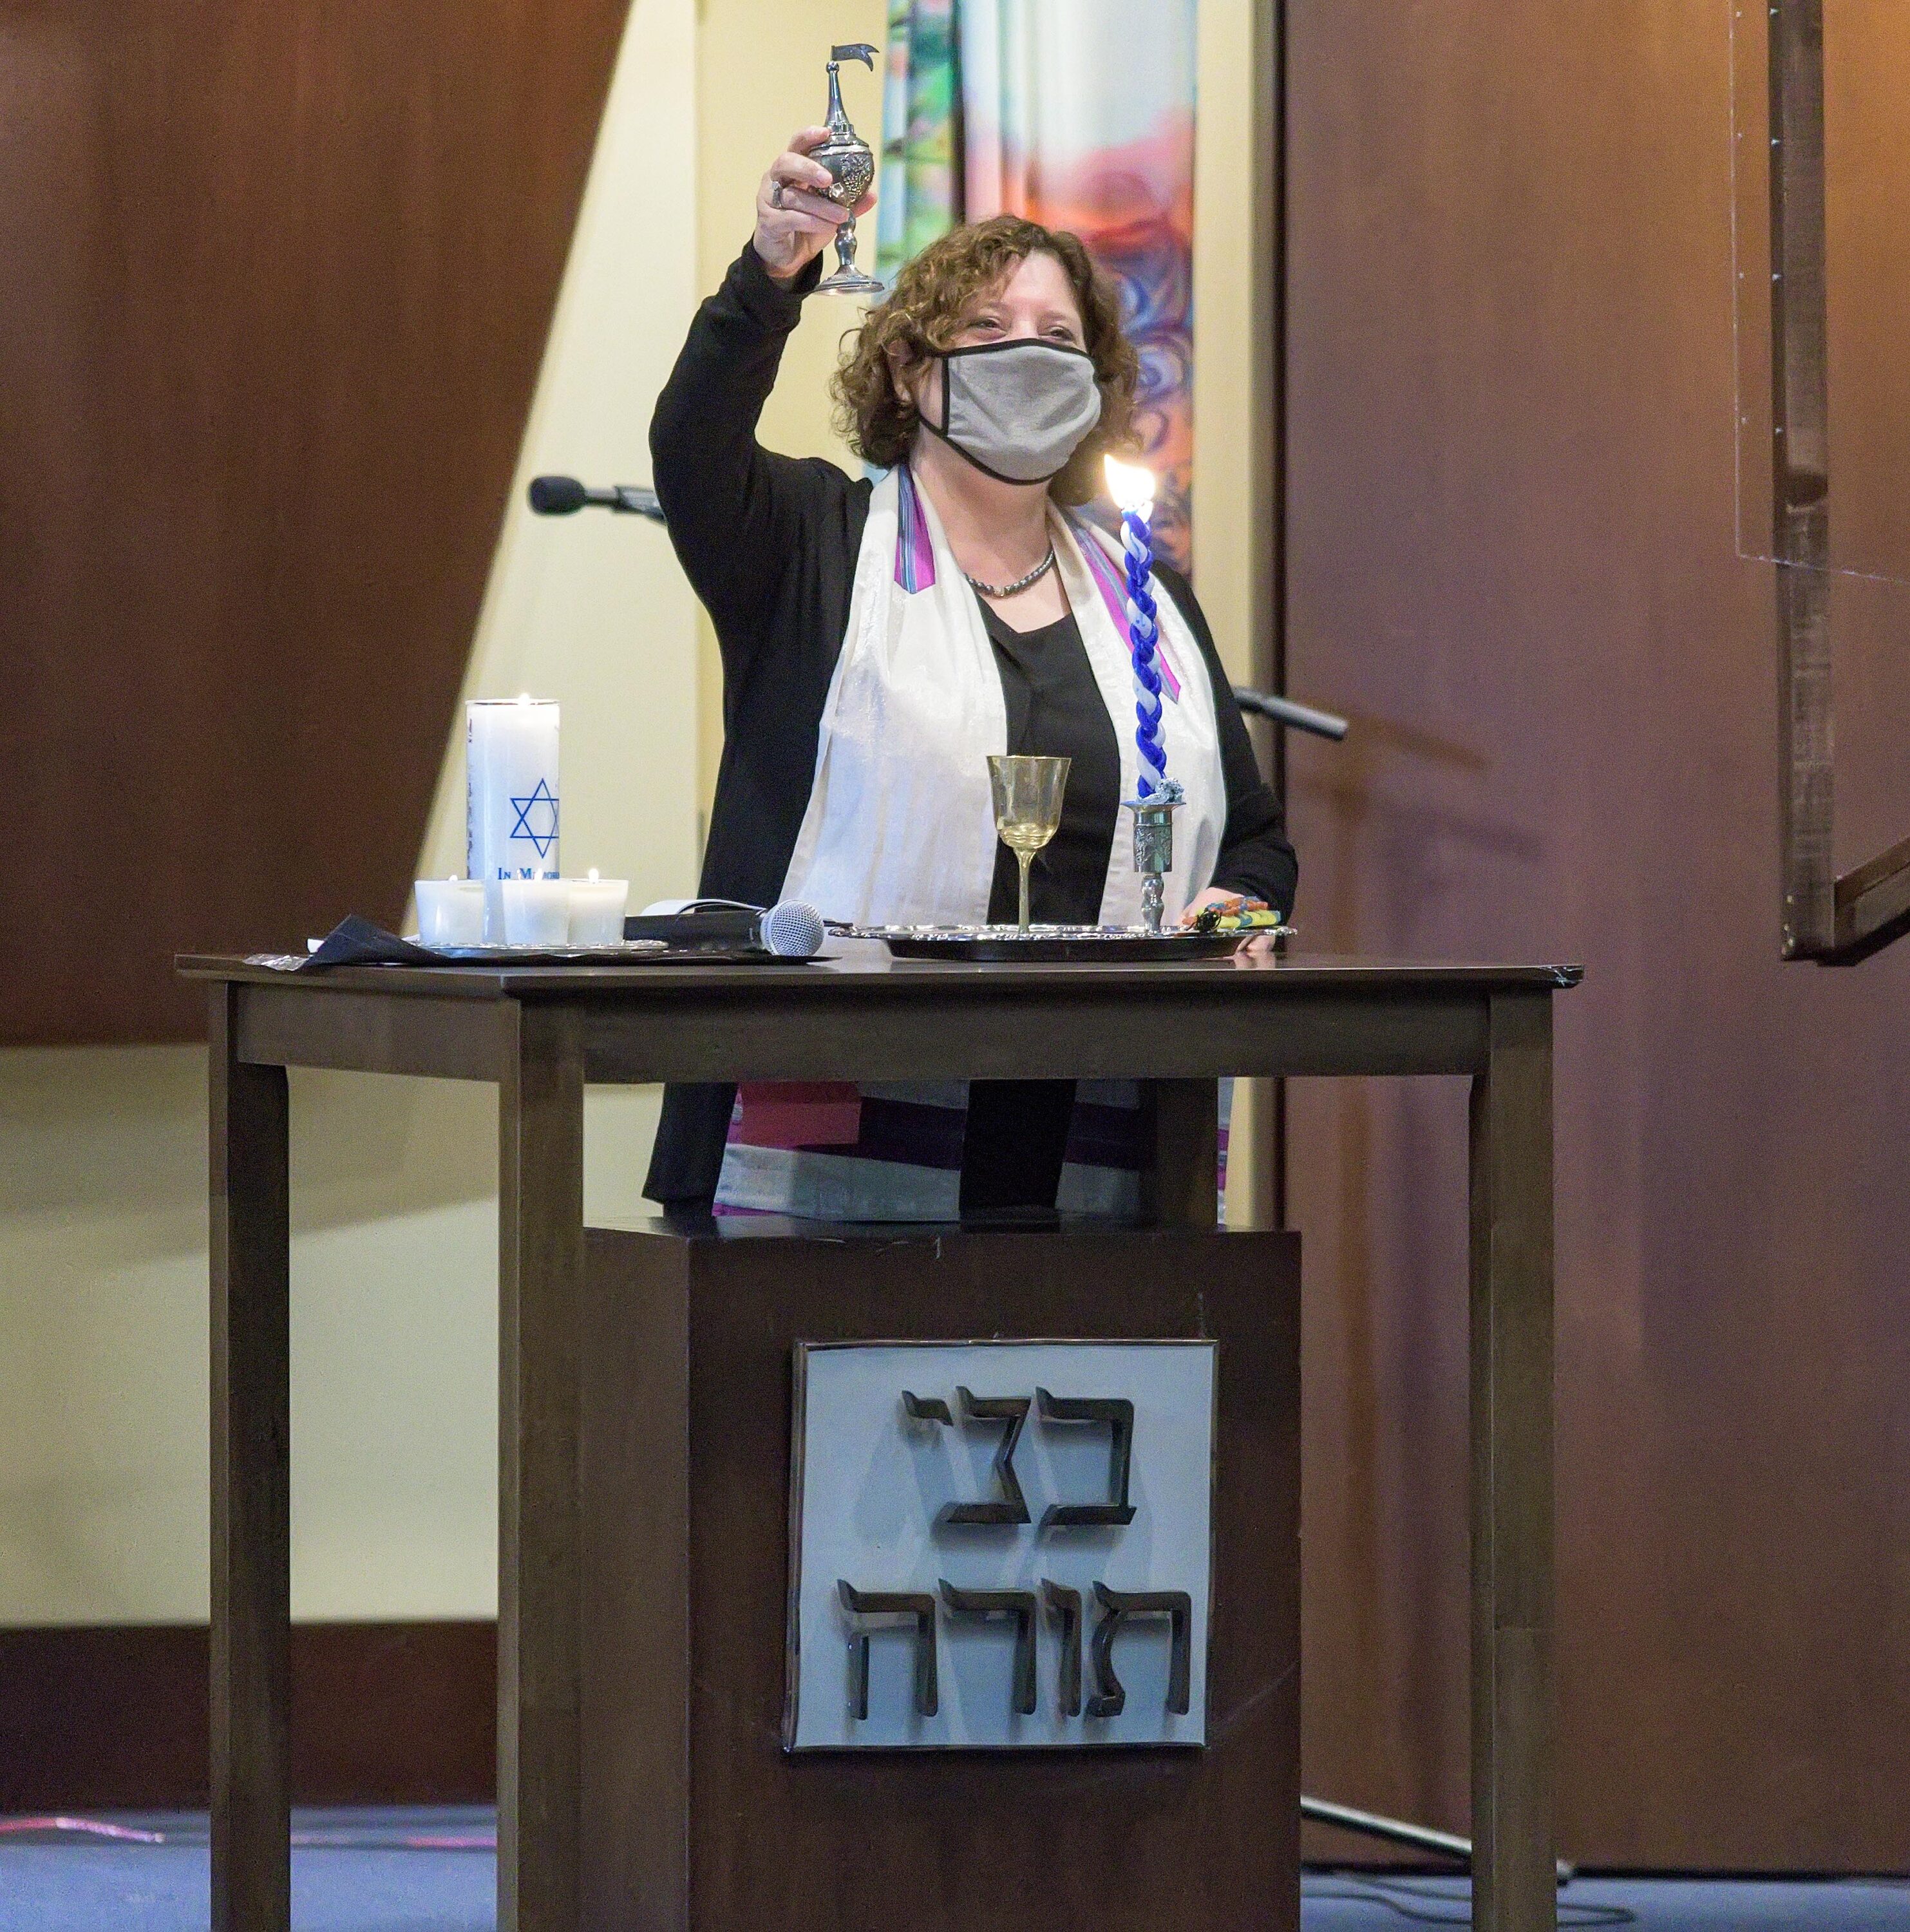 Share Yom Kippur With Bnai Torah Jewishboston